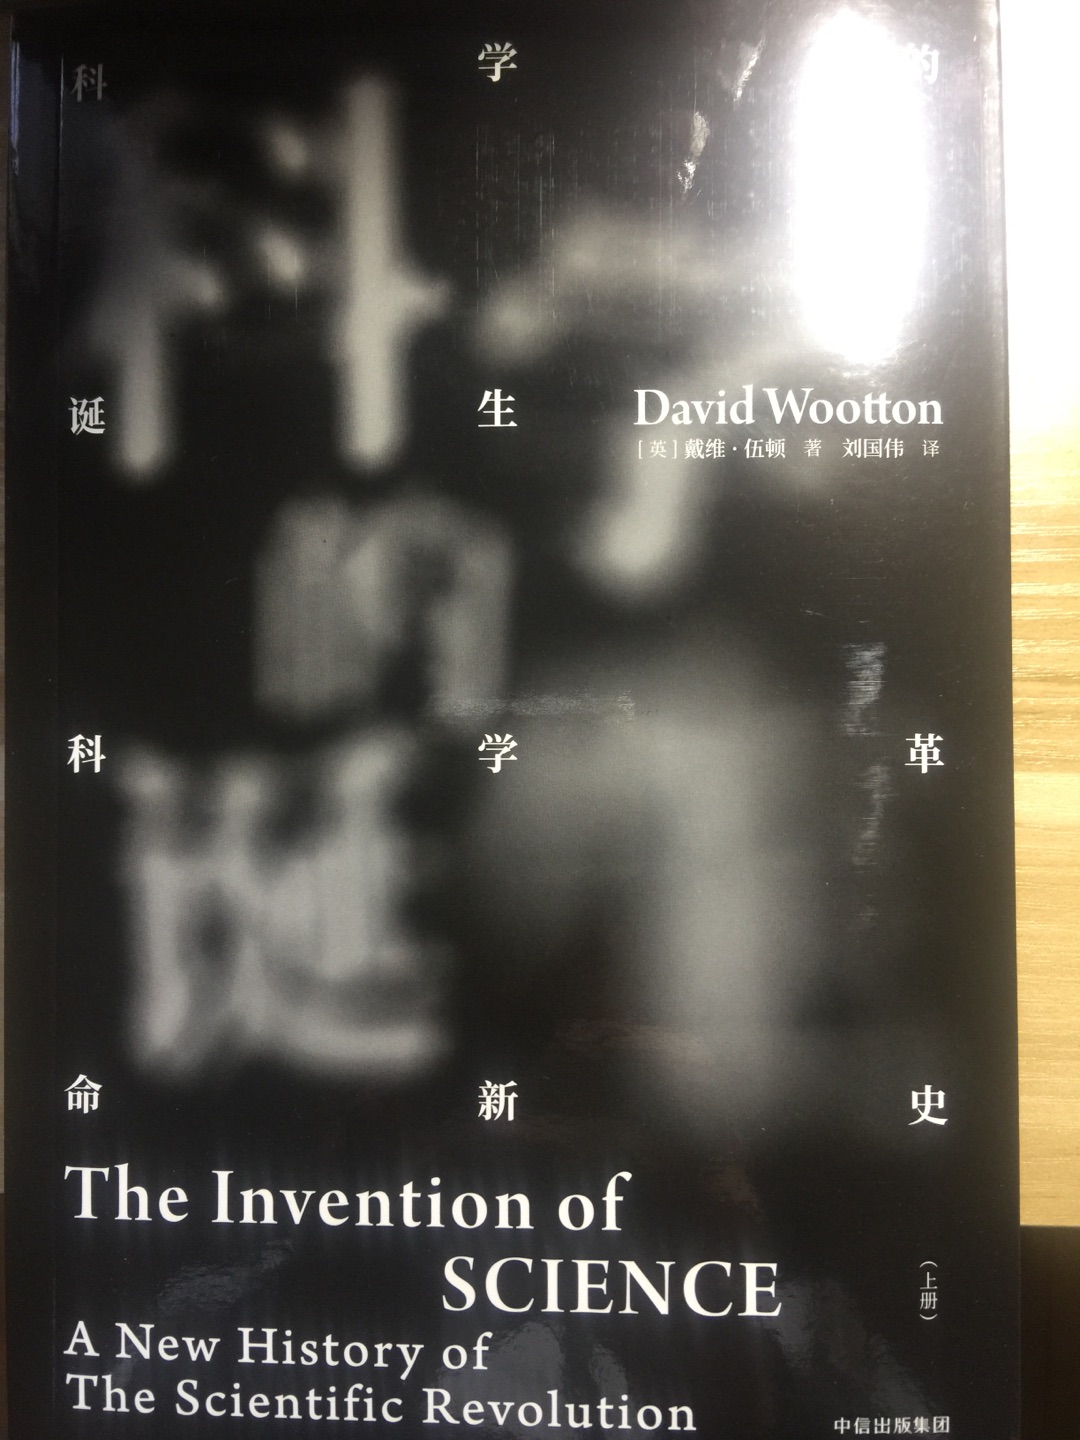 大卫·沃顿的《科学的发明》是一部真正值得注意的学术著作。他的著作拥有富有创造性的、创新的语言学基础，考察了词语的发明和再定义，将其当做了一种新的对自然的理解的标识，并通过这些标识来接近那种新理解。他的博学令人肃然起敬，他的论证令人信服。